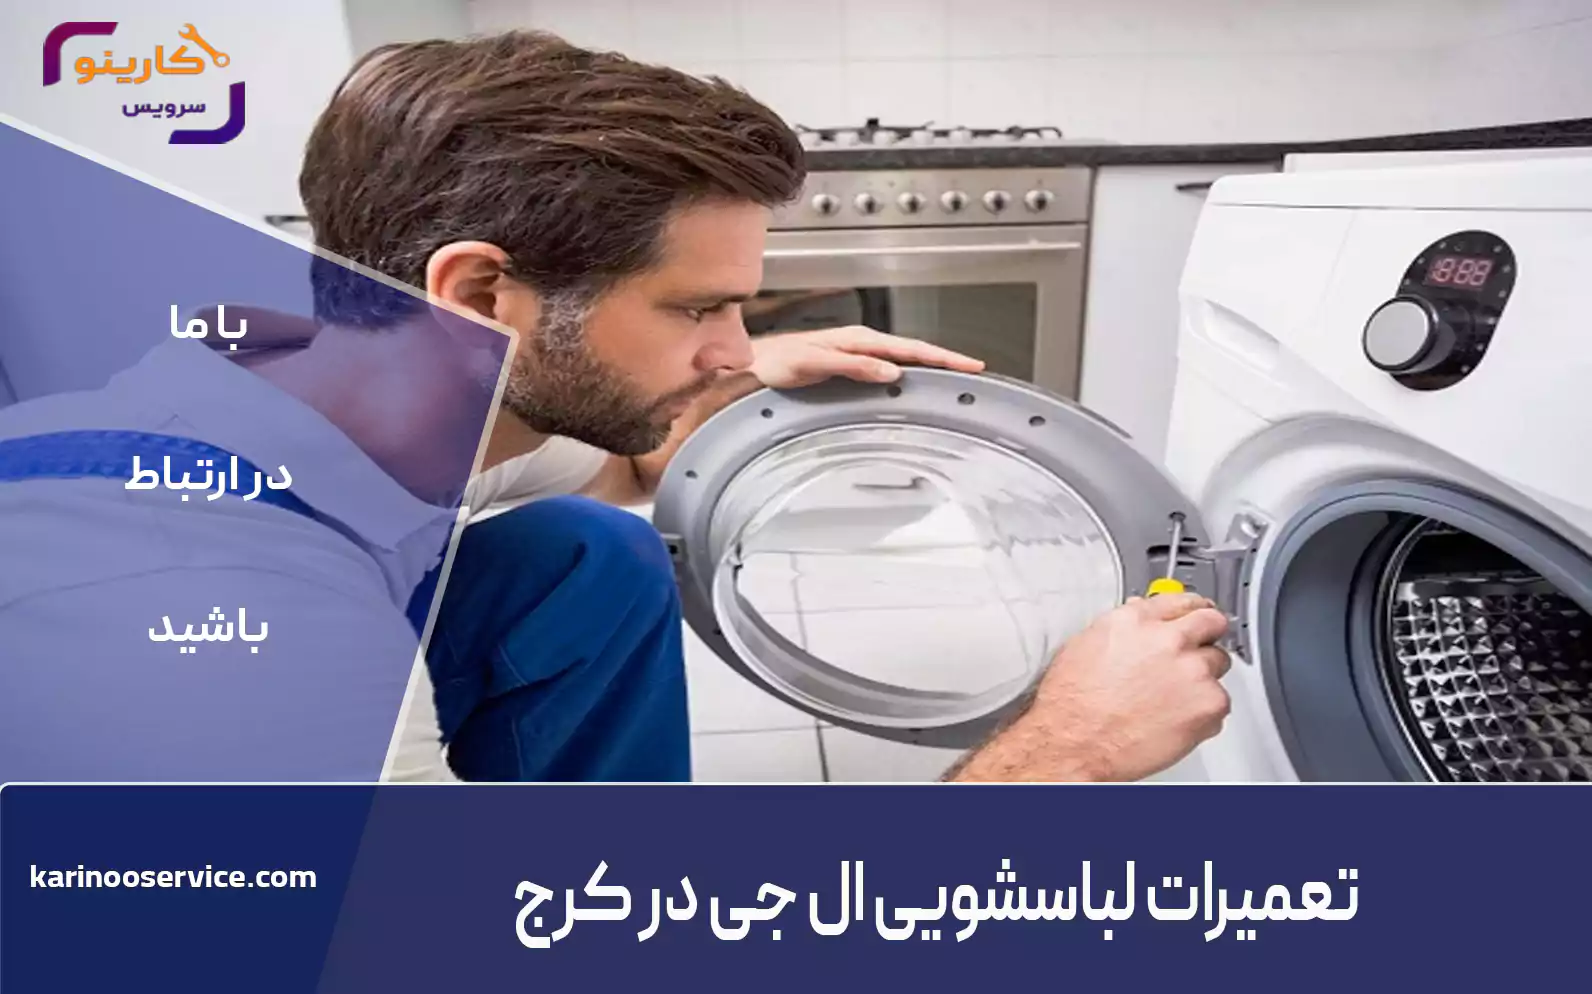 نمایندگی ماشین لباسشویی ال جی در شهریار